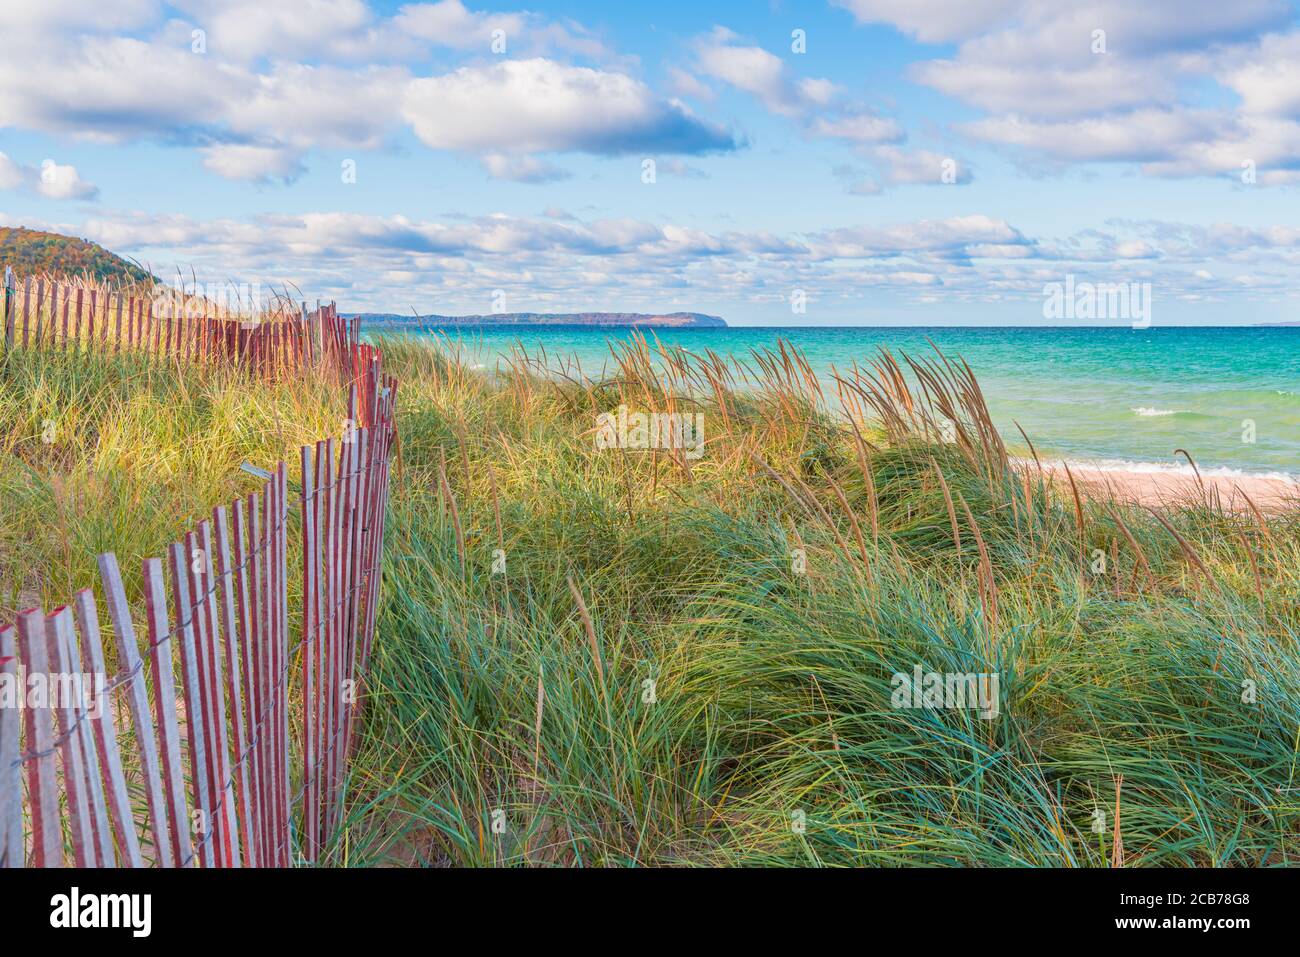 Strandgräser, blauer Himmel und Lake Michigan an einem Sommertag. Ein schönes Bild für Frühling, Sommer und Herbst Werbematerialien. Stockfoto